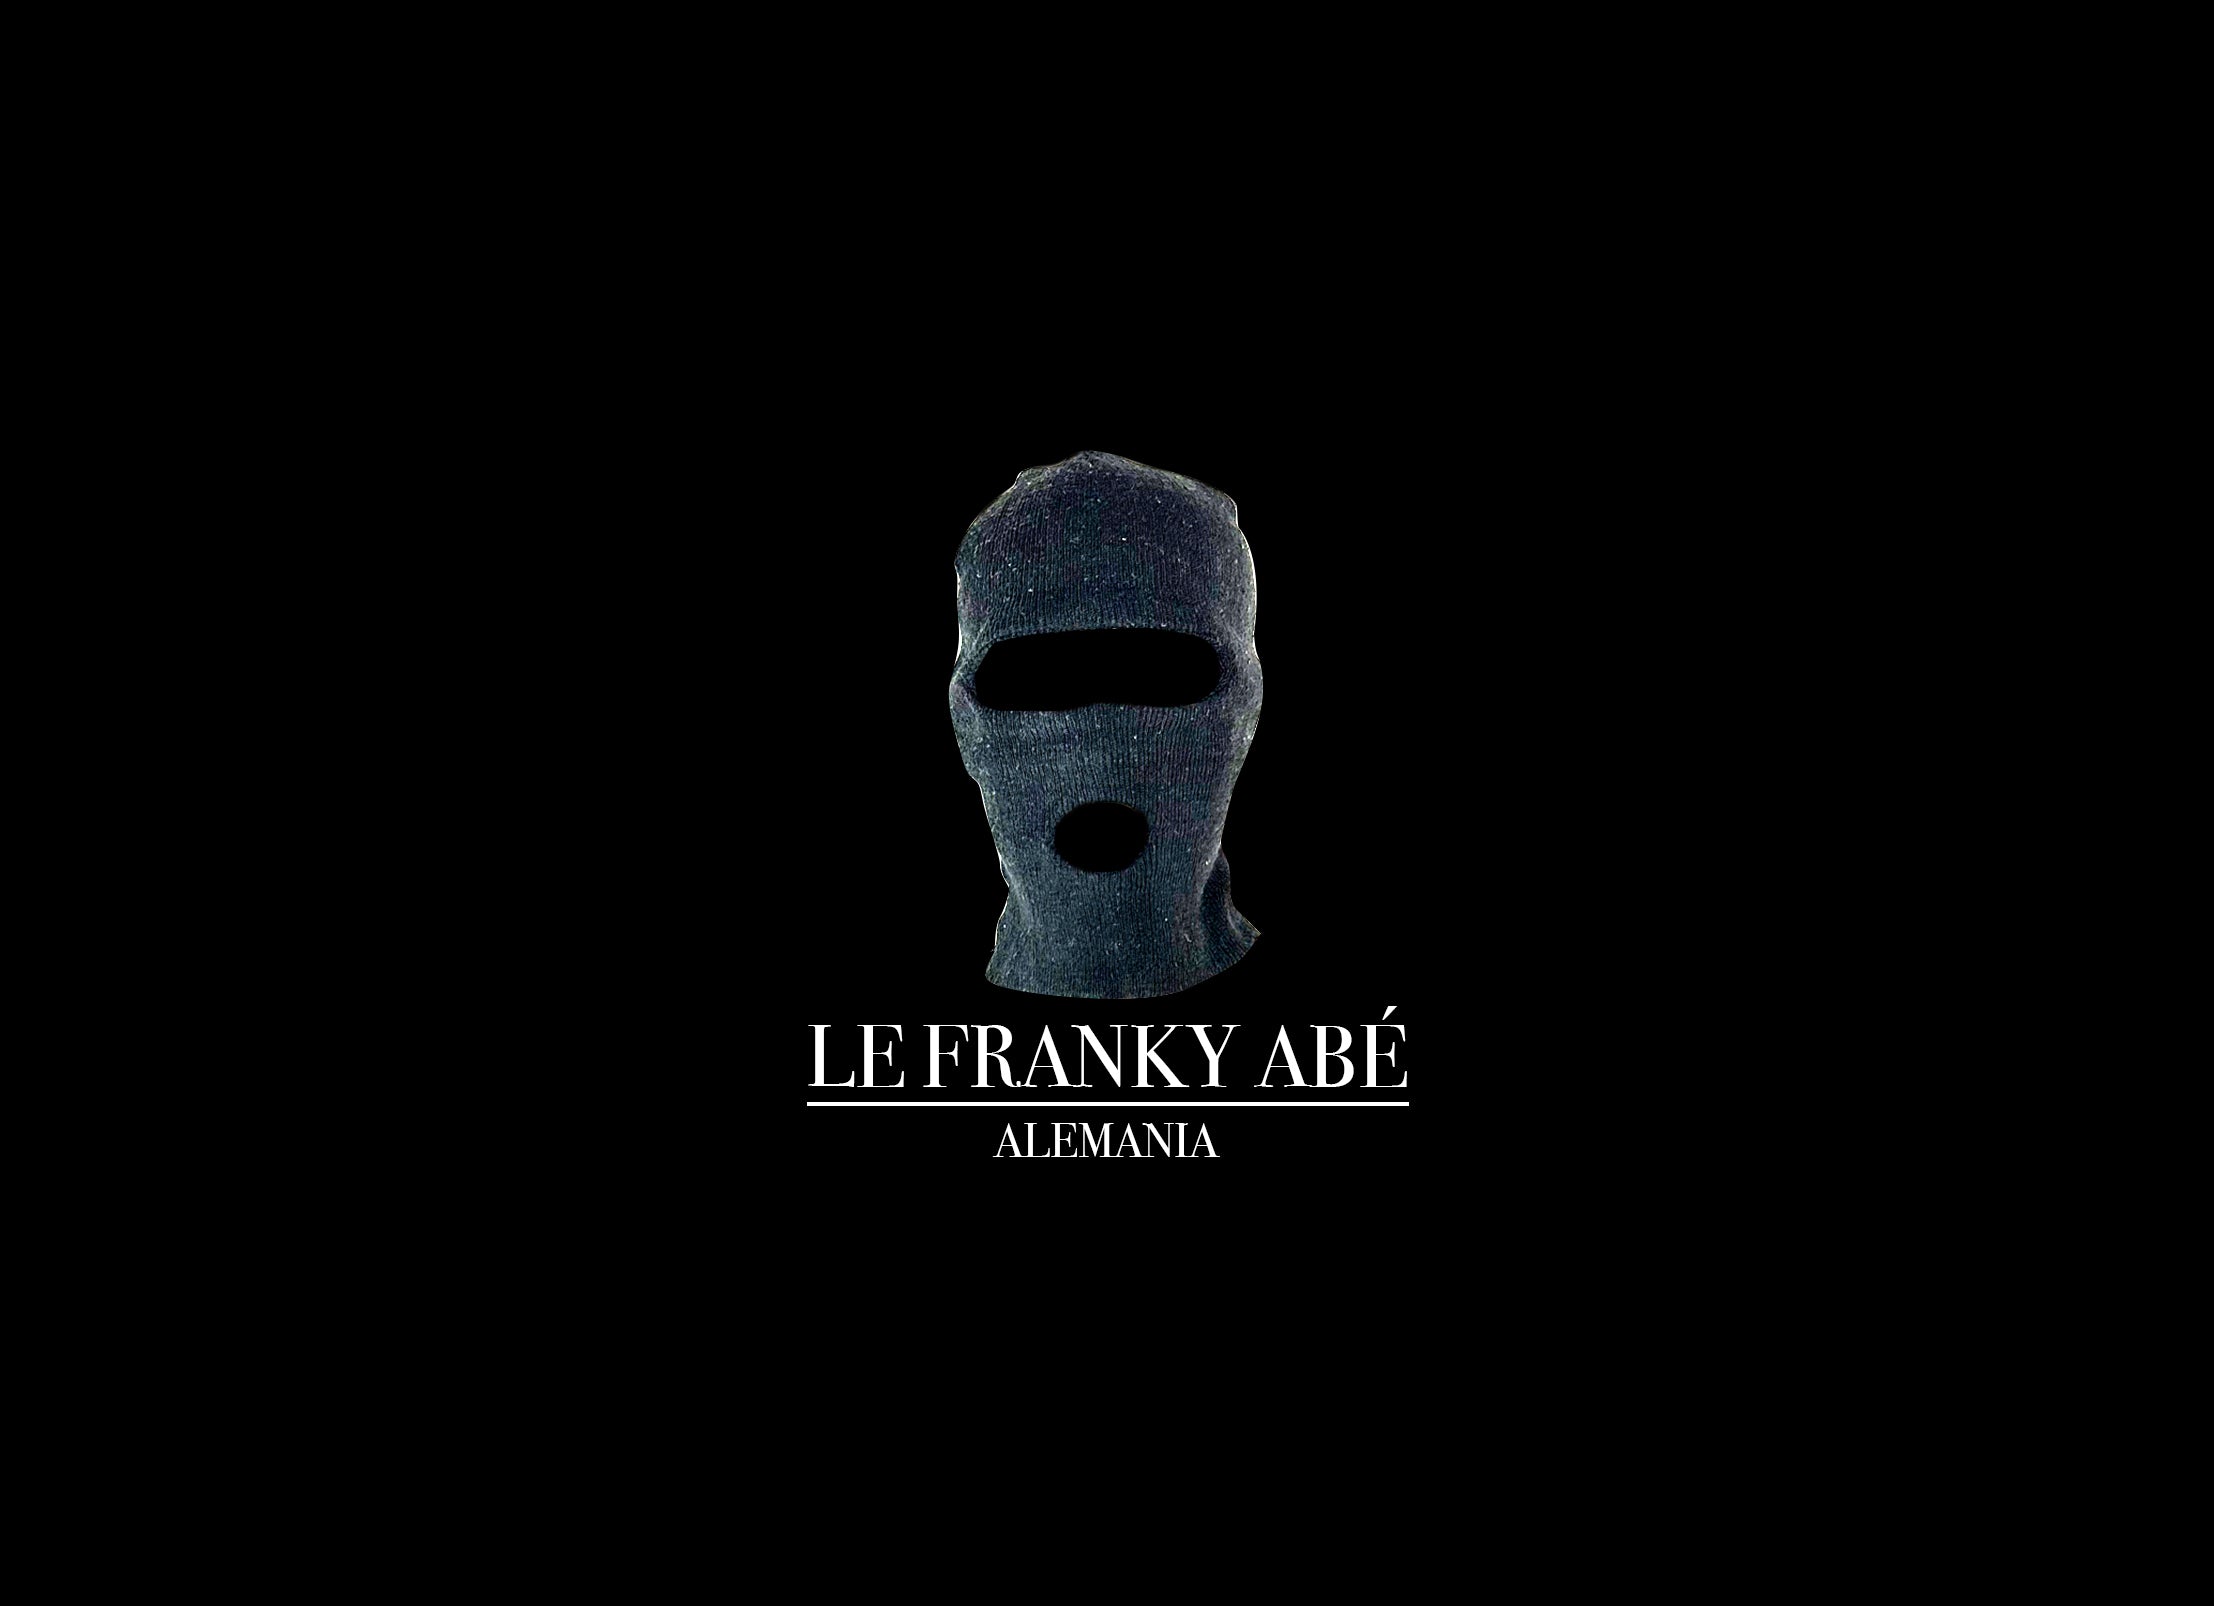 Le Franky Abé